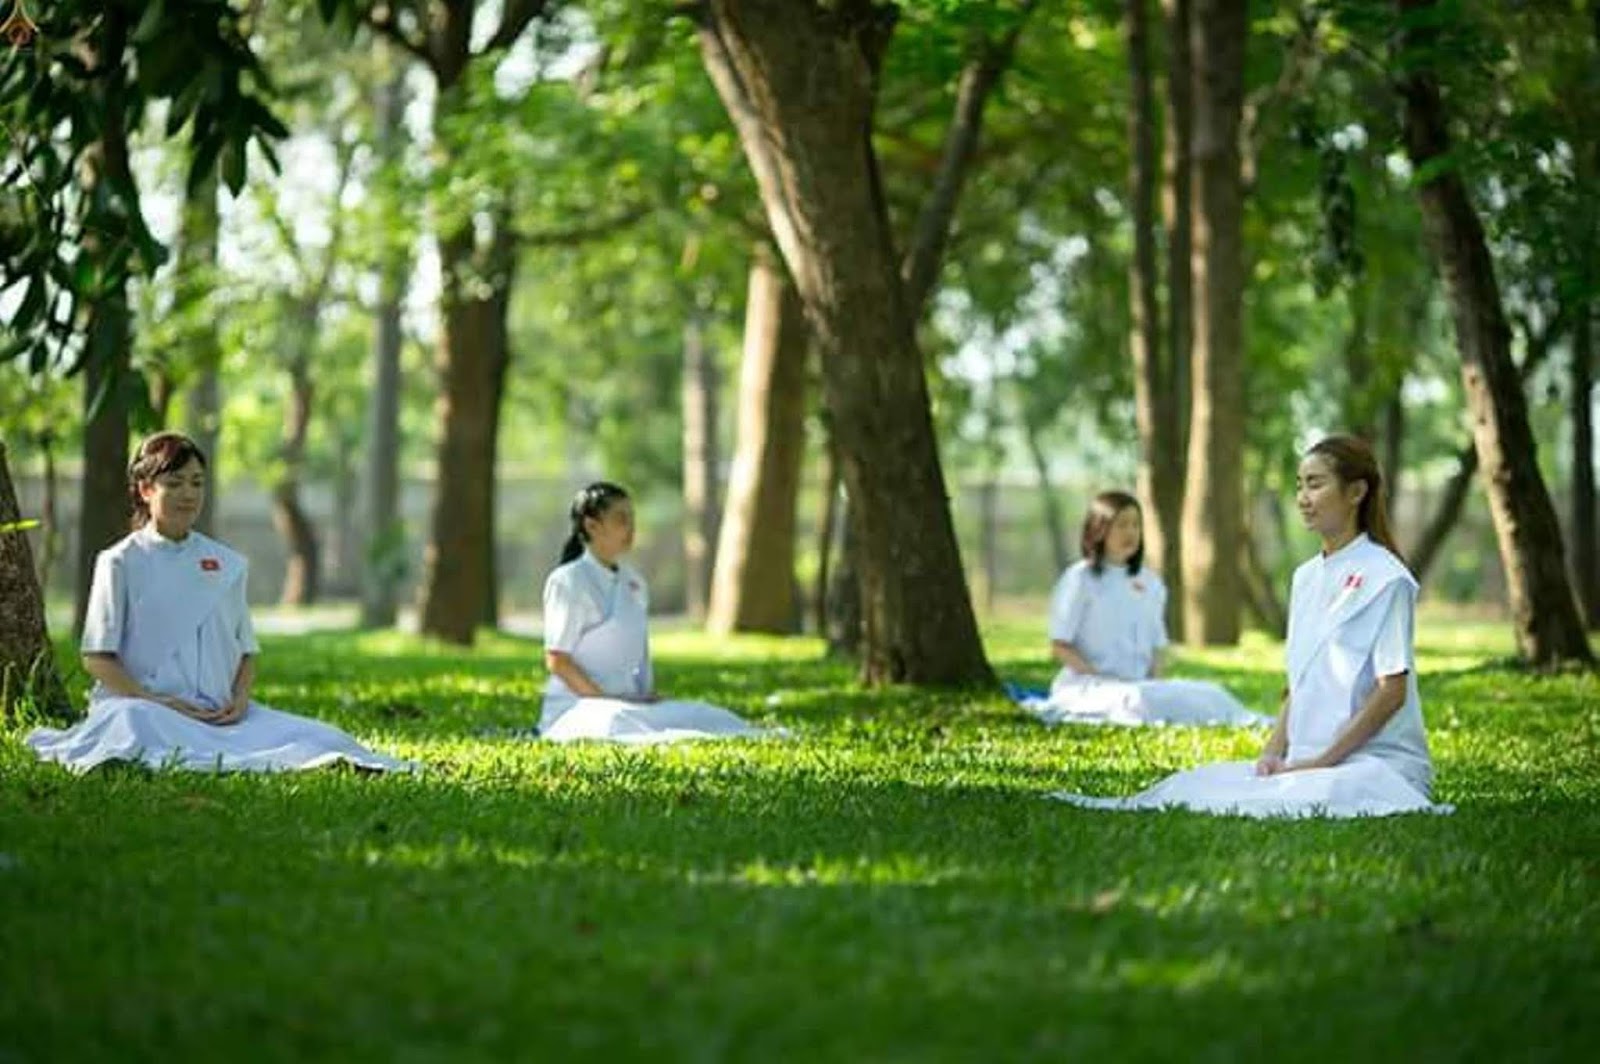 Thiền Vipassana là gì? Thiền Vipassana có tác dụng gì cho sức khỏe?